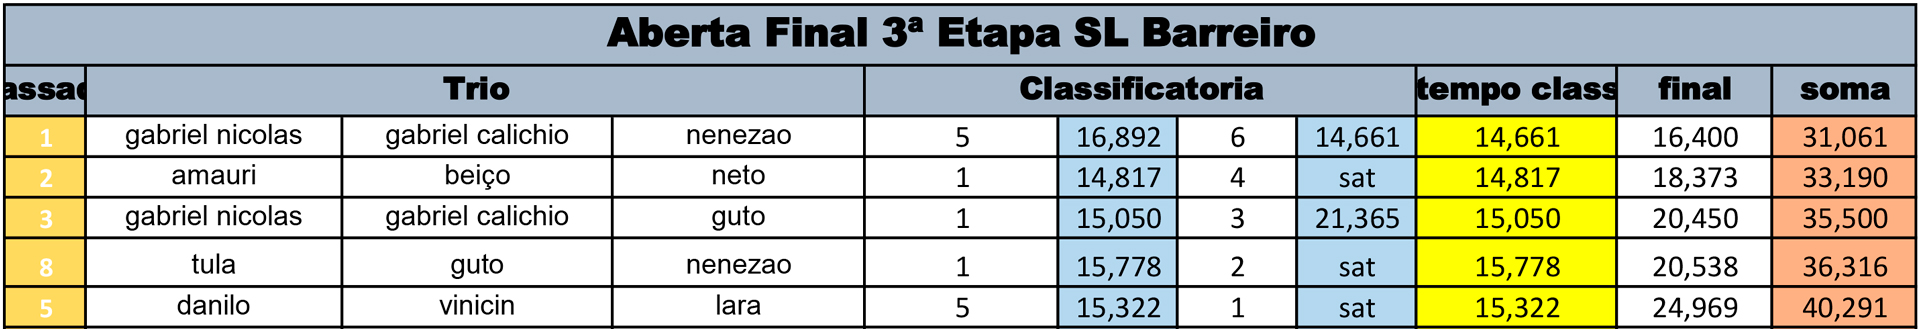 Aberta-Final-3-Etapa-SL-Barreiro